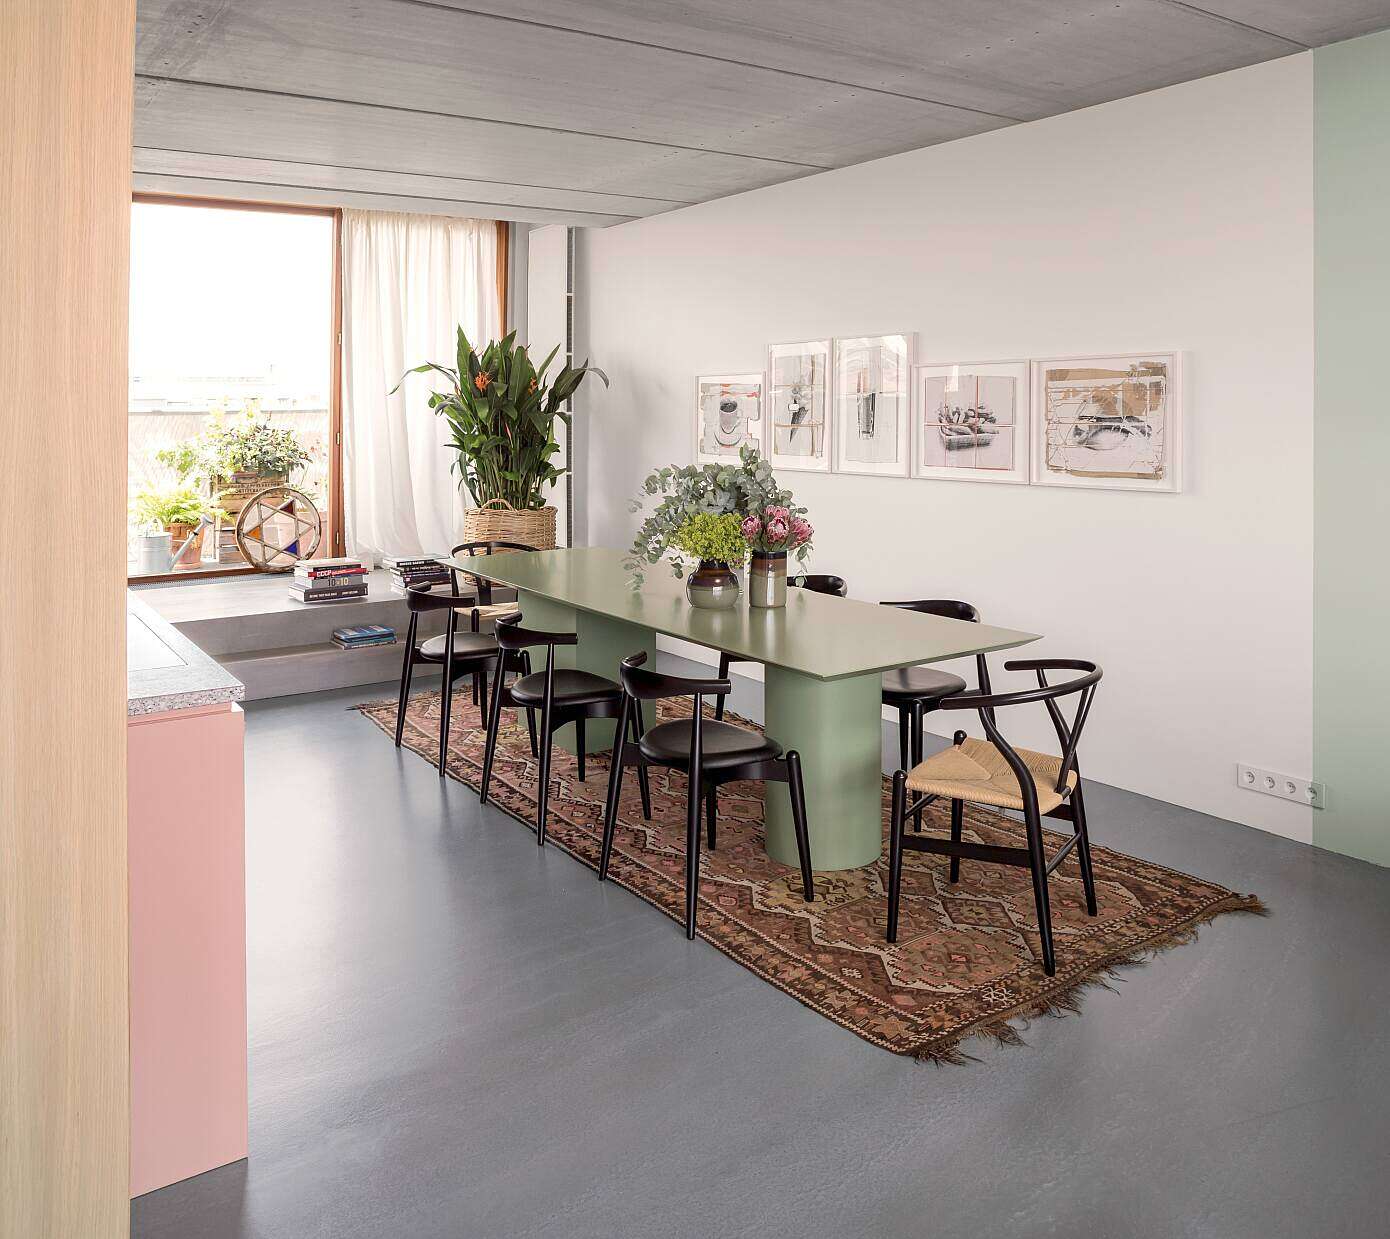 Ester’s Apartment by Ester Bruzkus Architects